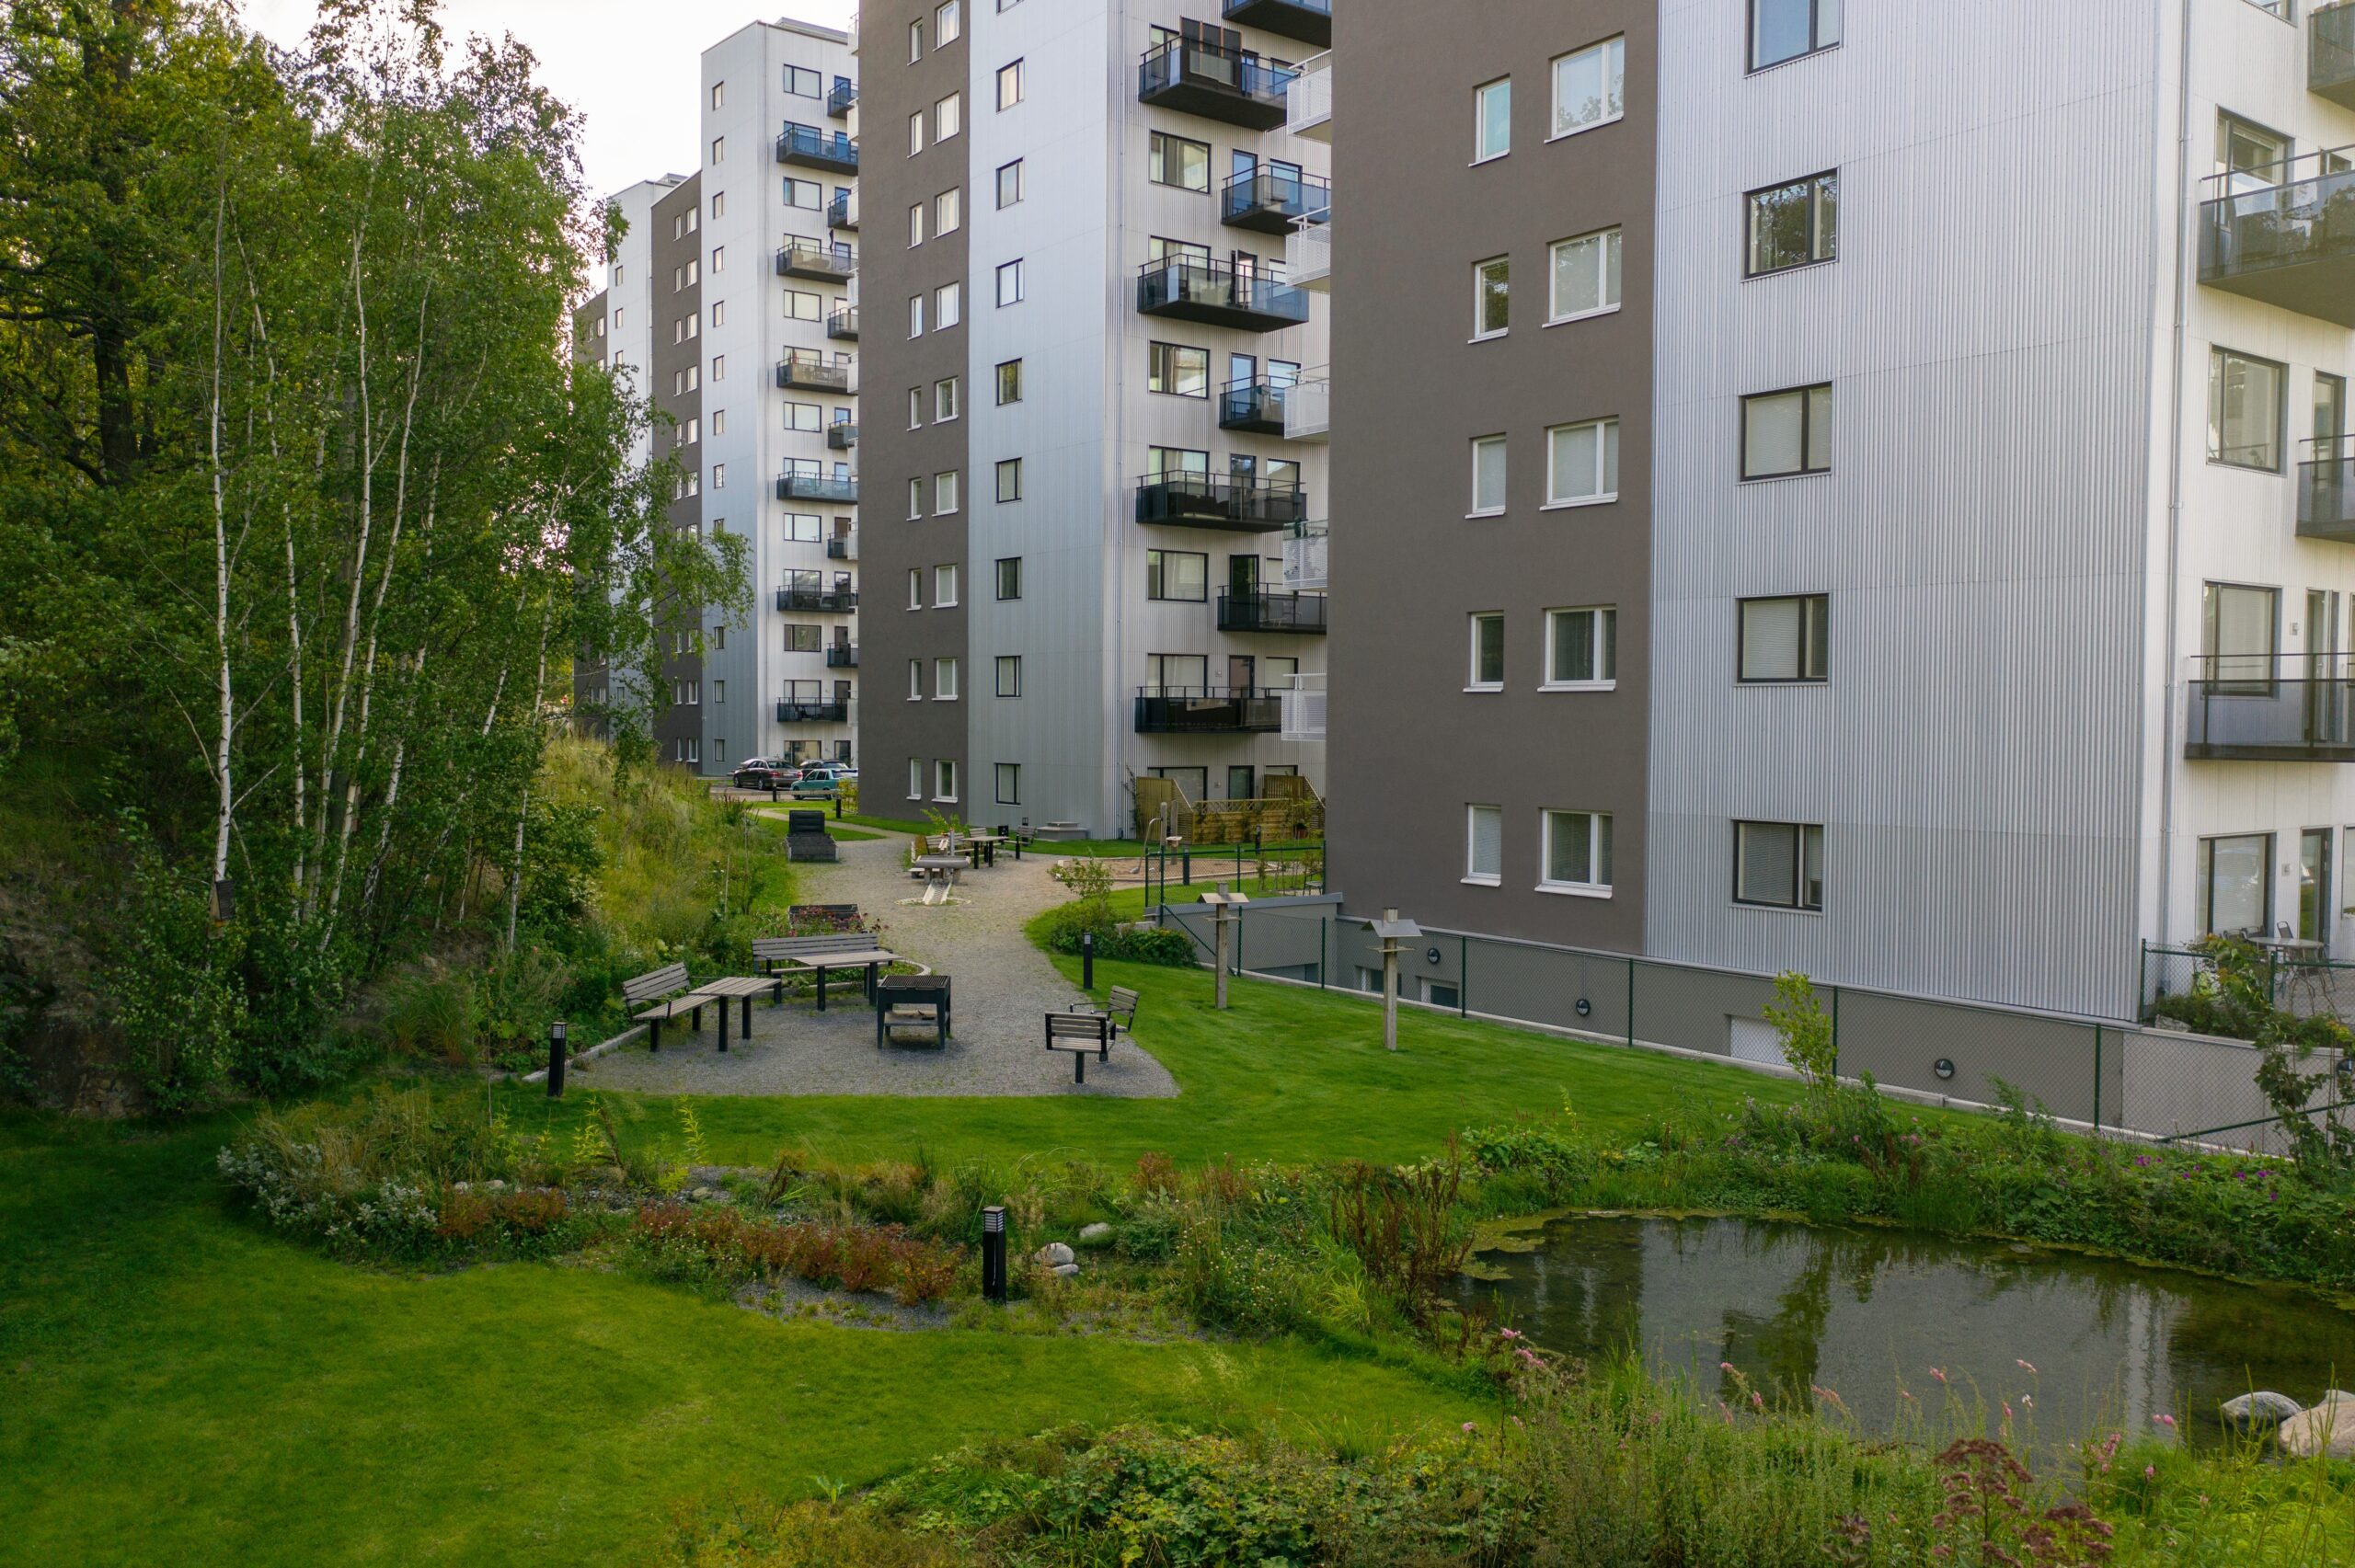 Grön bakgård till hyreslägenhetshus i Västerås